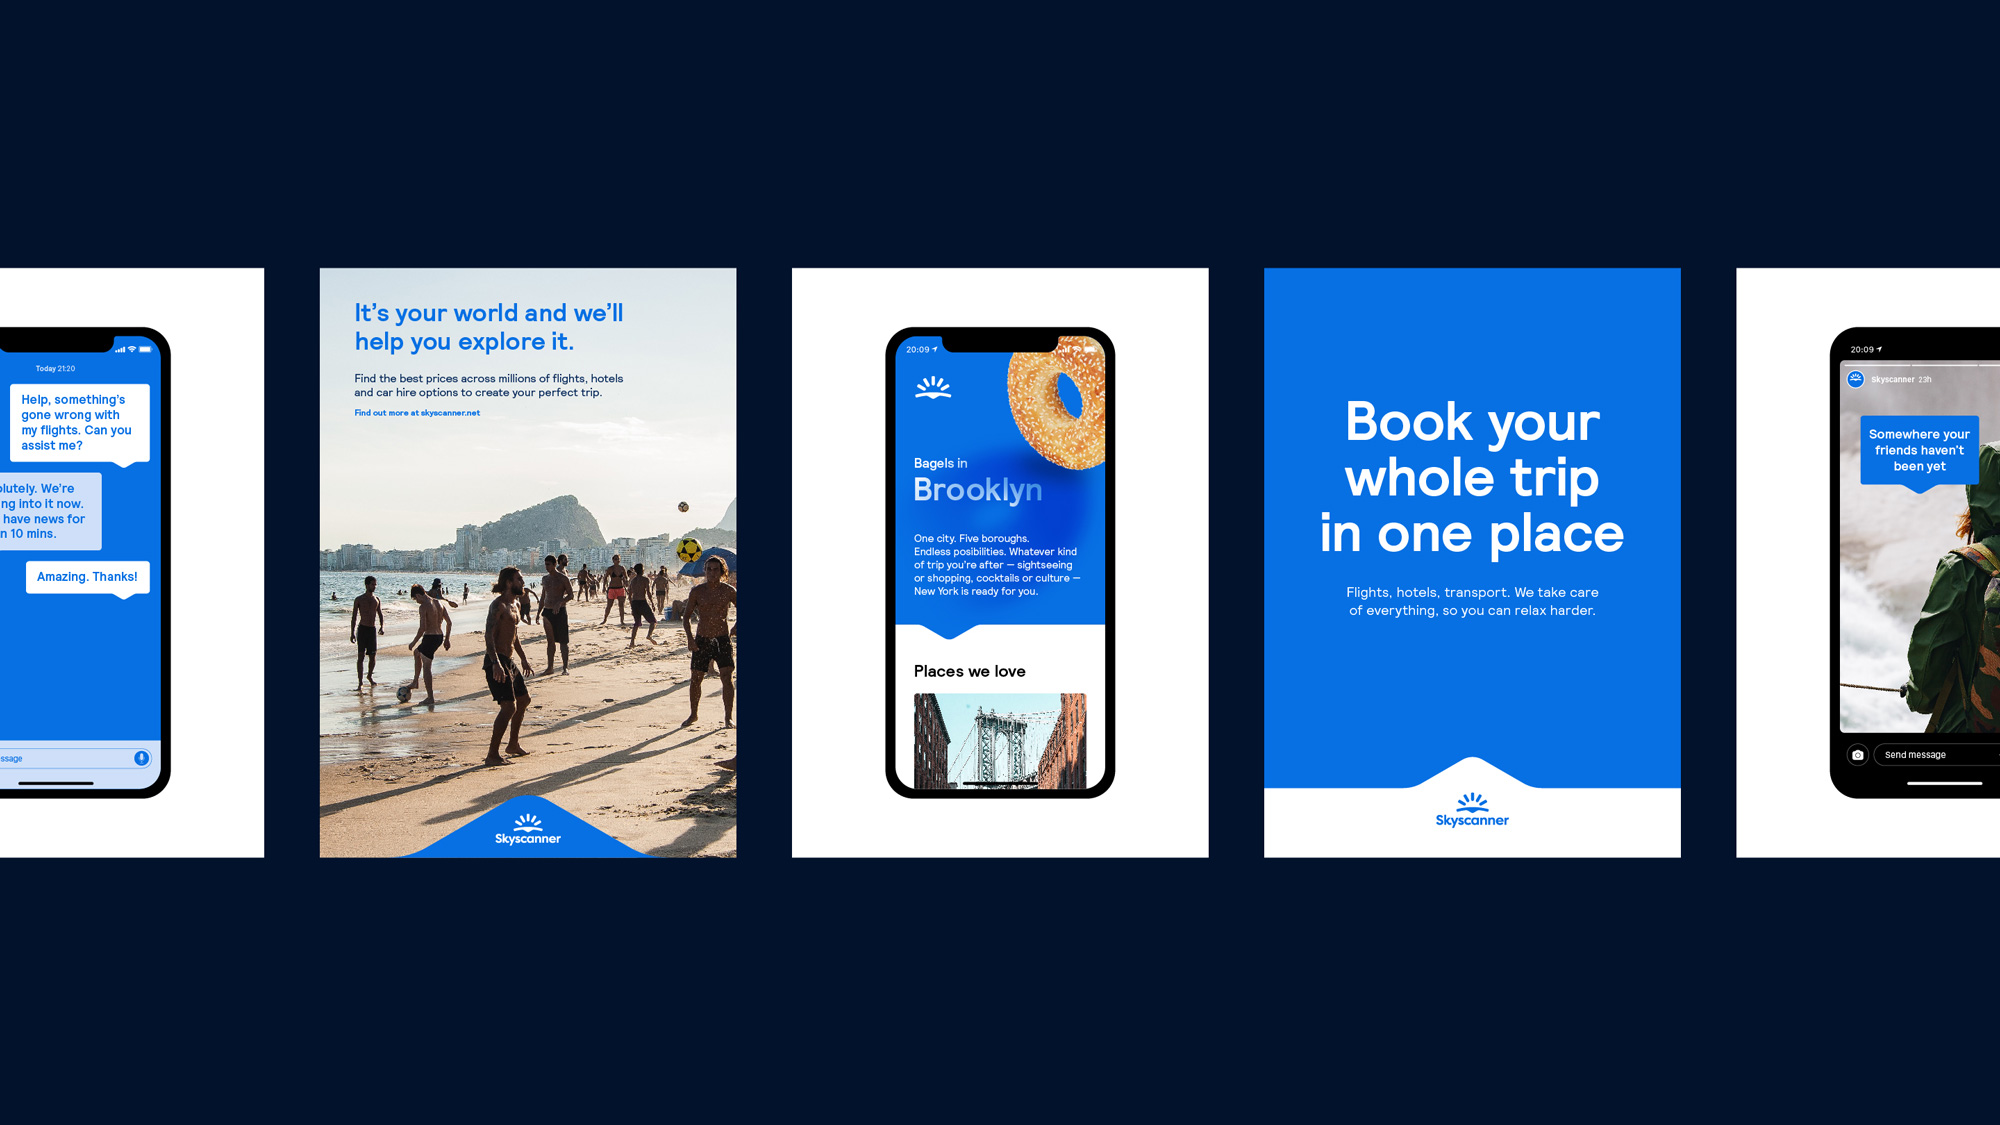 携程旗下在线旅游预订服务平台Skyscanner公司广告设计